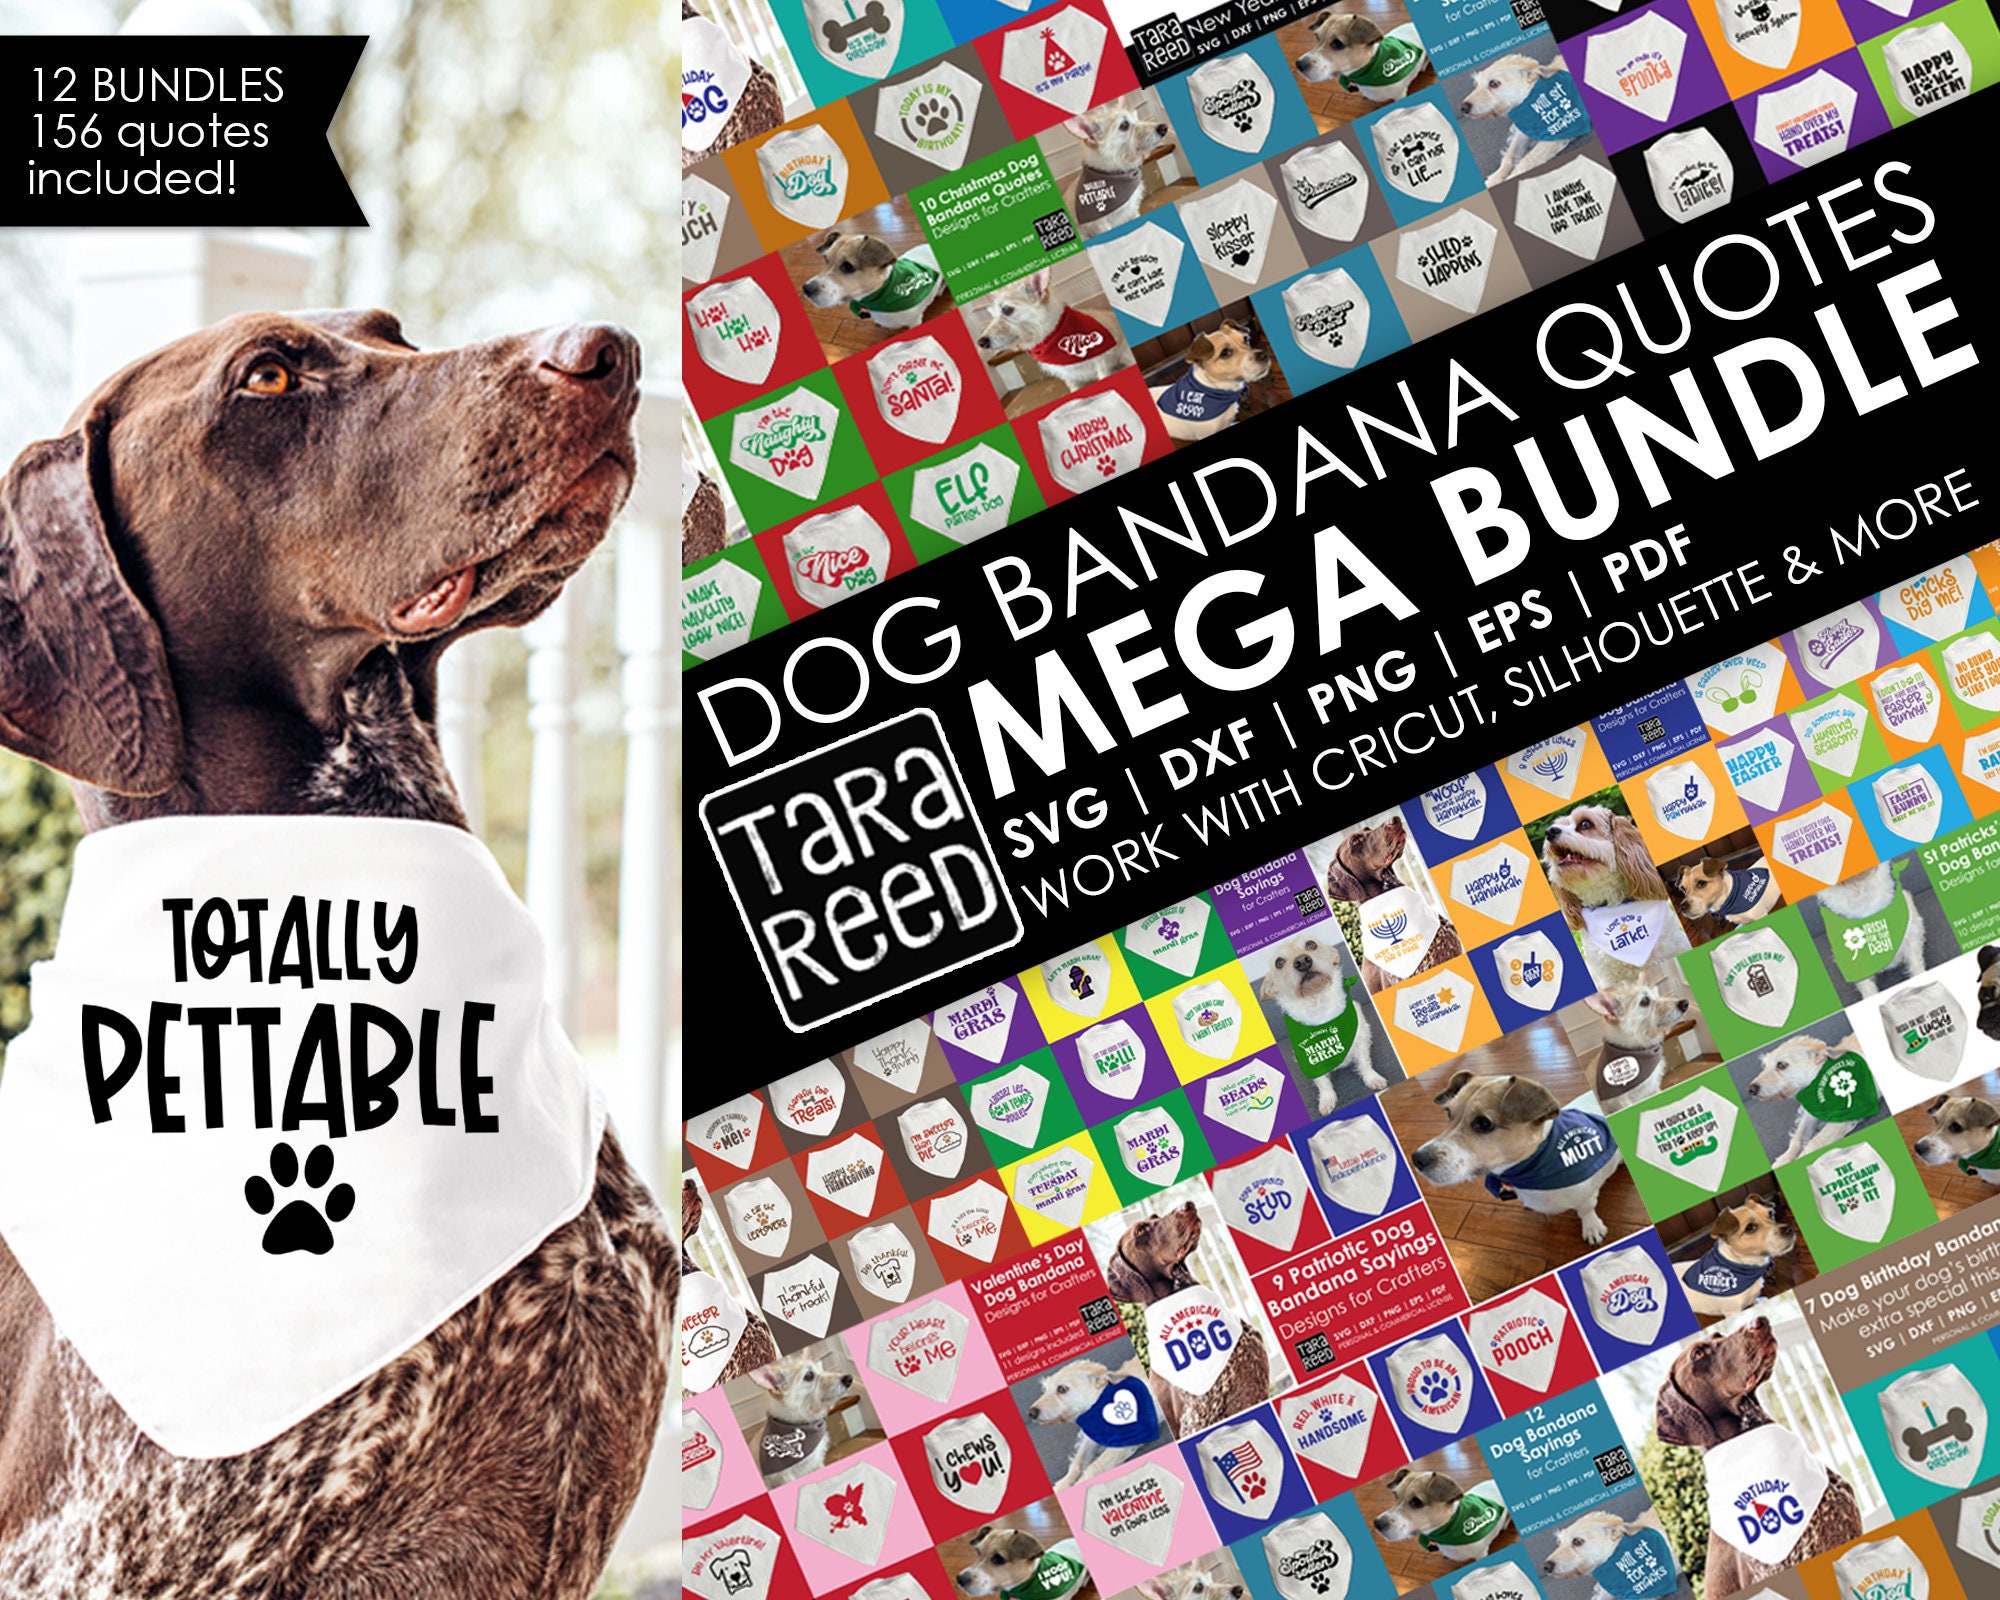 The MEGA Bundle of Dog Bandana Quotes